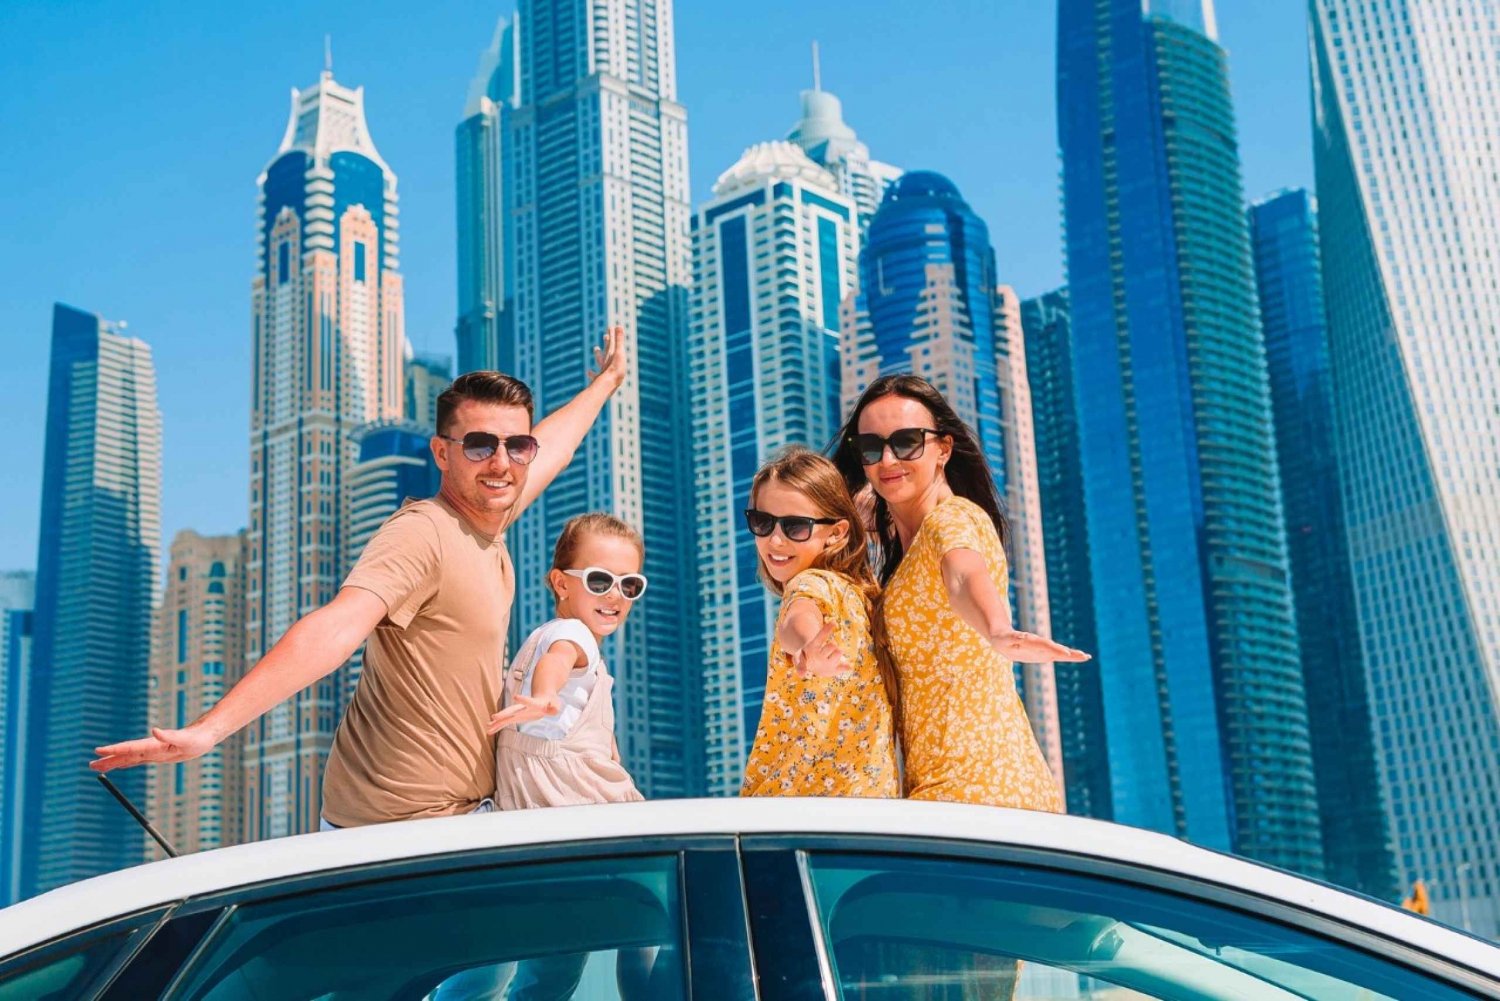 Dubai: City Tour Half Day (4-5 hours)